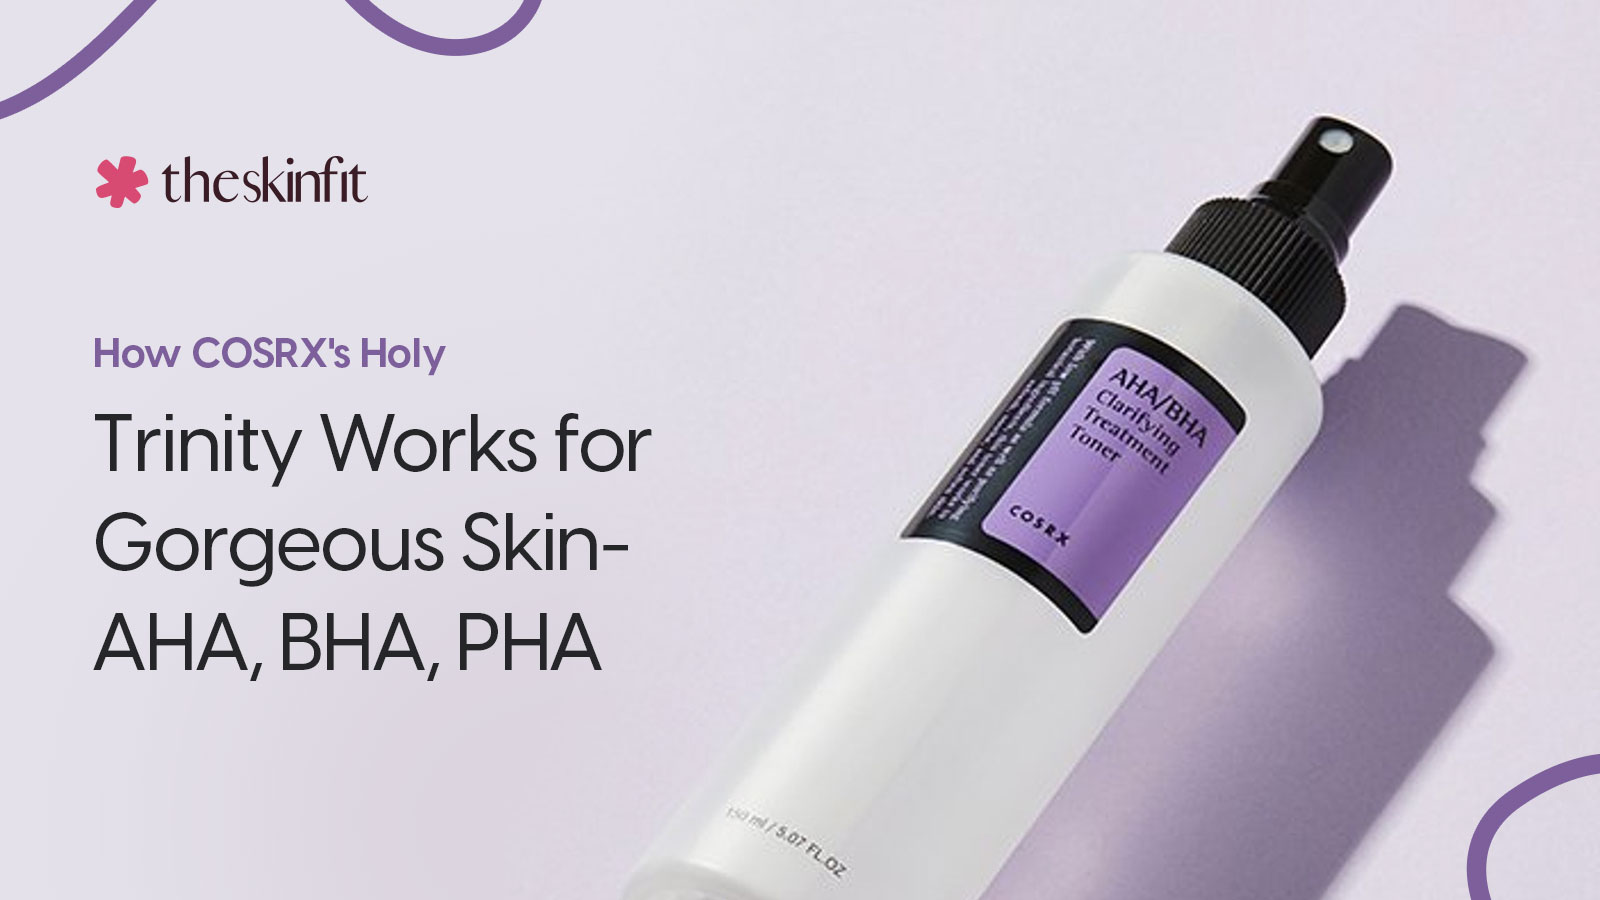 How COSRX's Holy Trinity Works for Gorgeous Skin- AHA, BHA, PHA